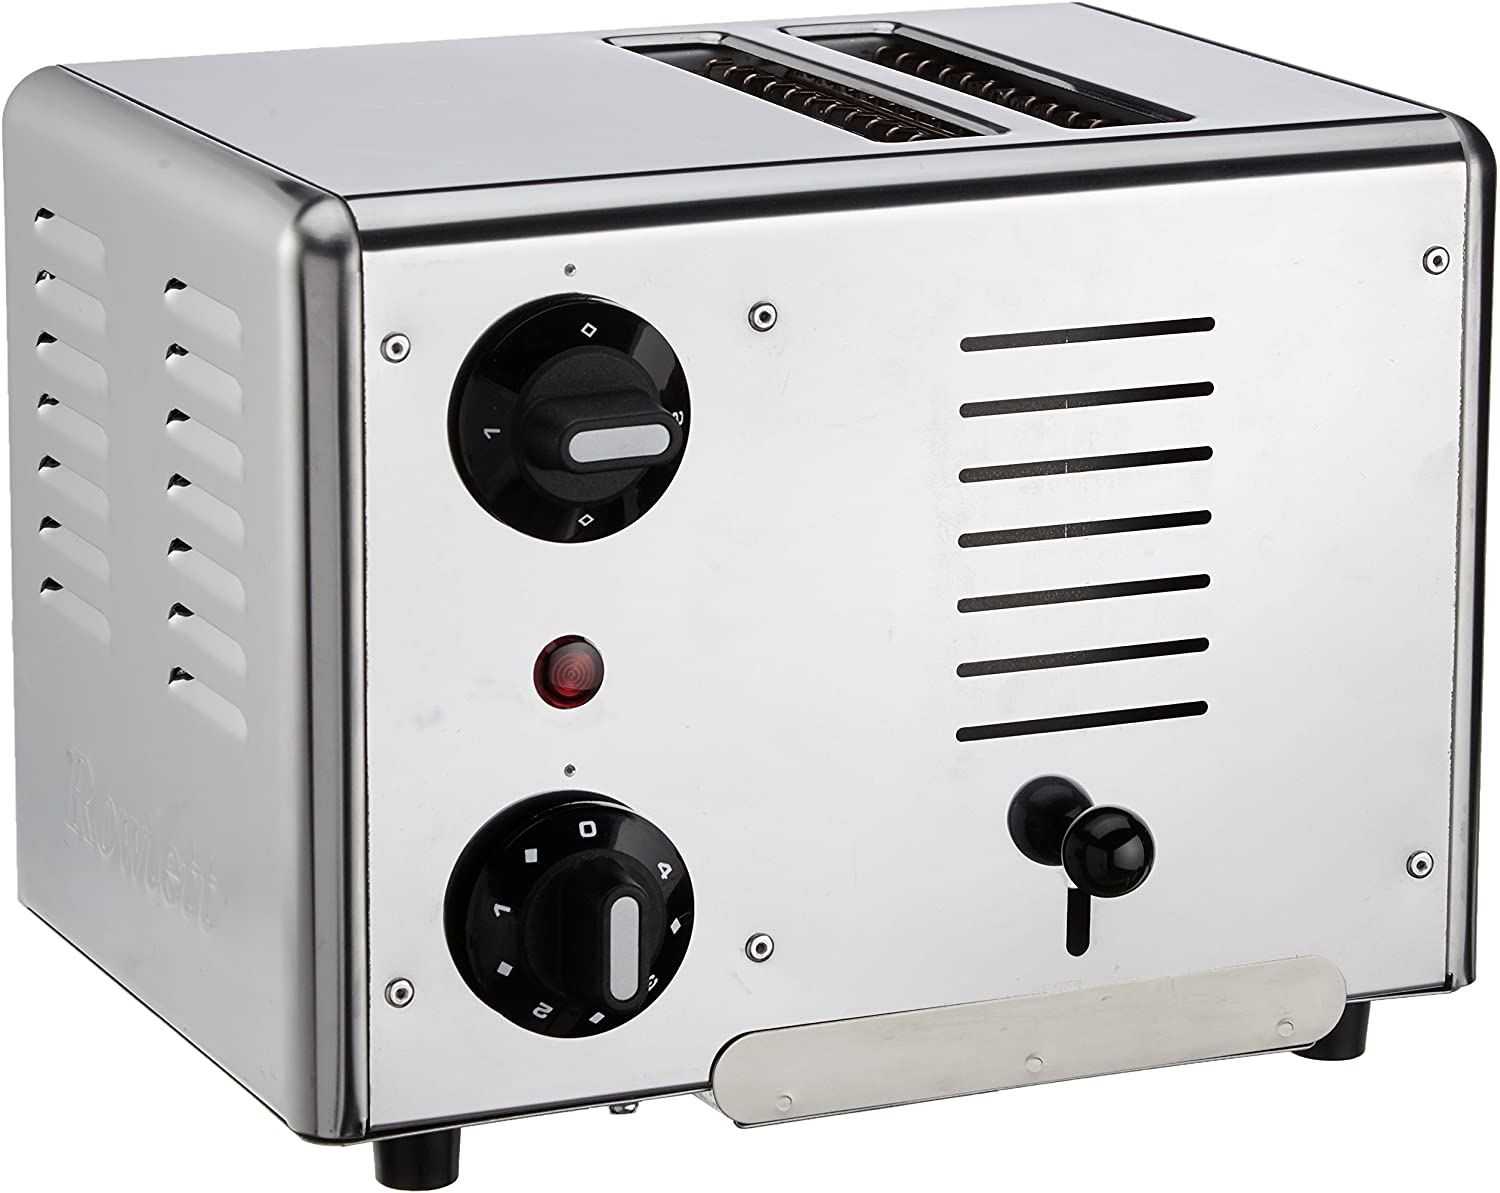 Gastroback 42002 Toaster, Silver